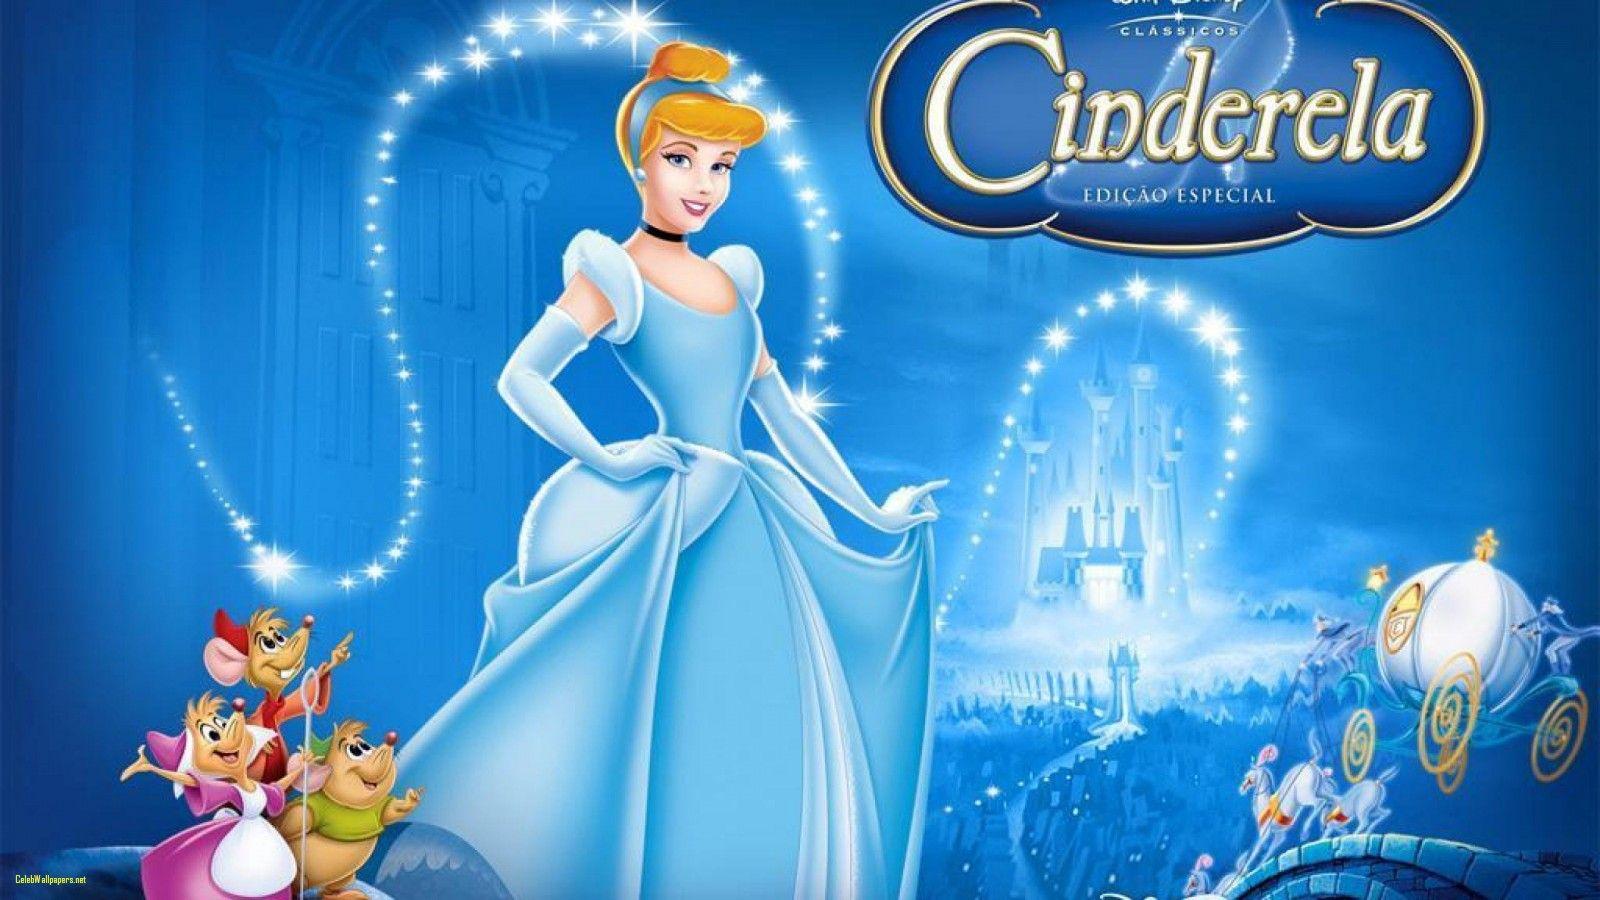 Cinderella Picture New Aad Cinderella Wallpaper Of Cinderella HD